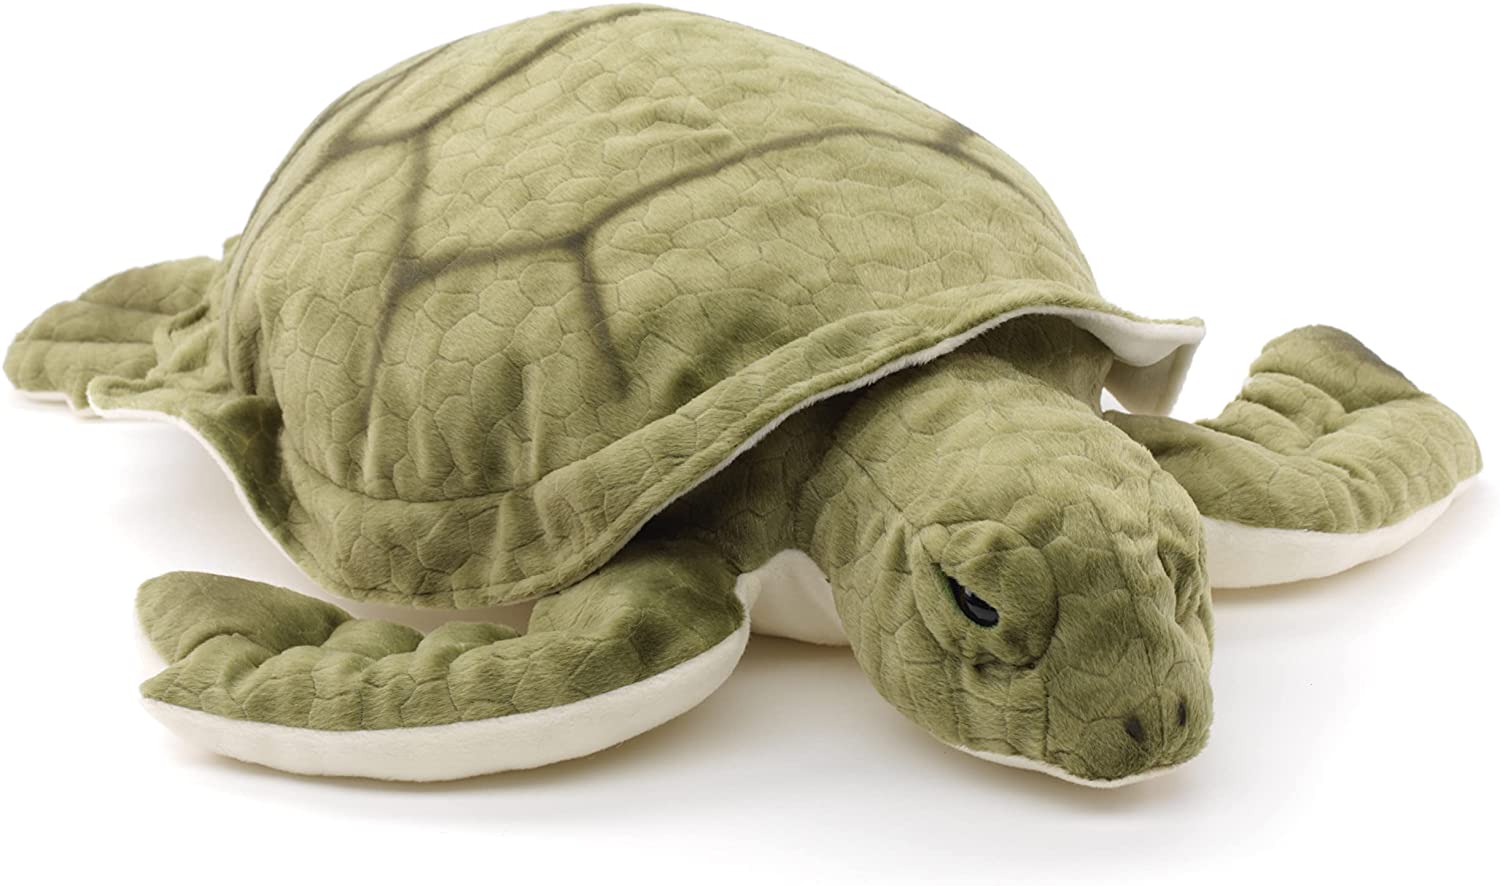 Uni-Toys - Grüne Meeresschildkröte - 55 cm (Länge) - Plüsch-Schildkröte - Plüschtier, Kuscheltier 